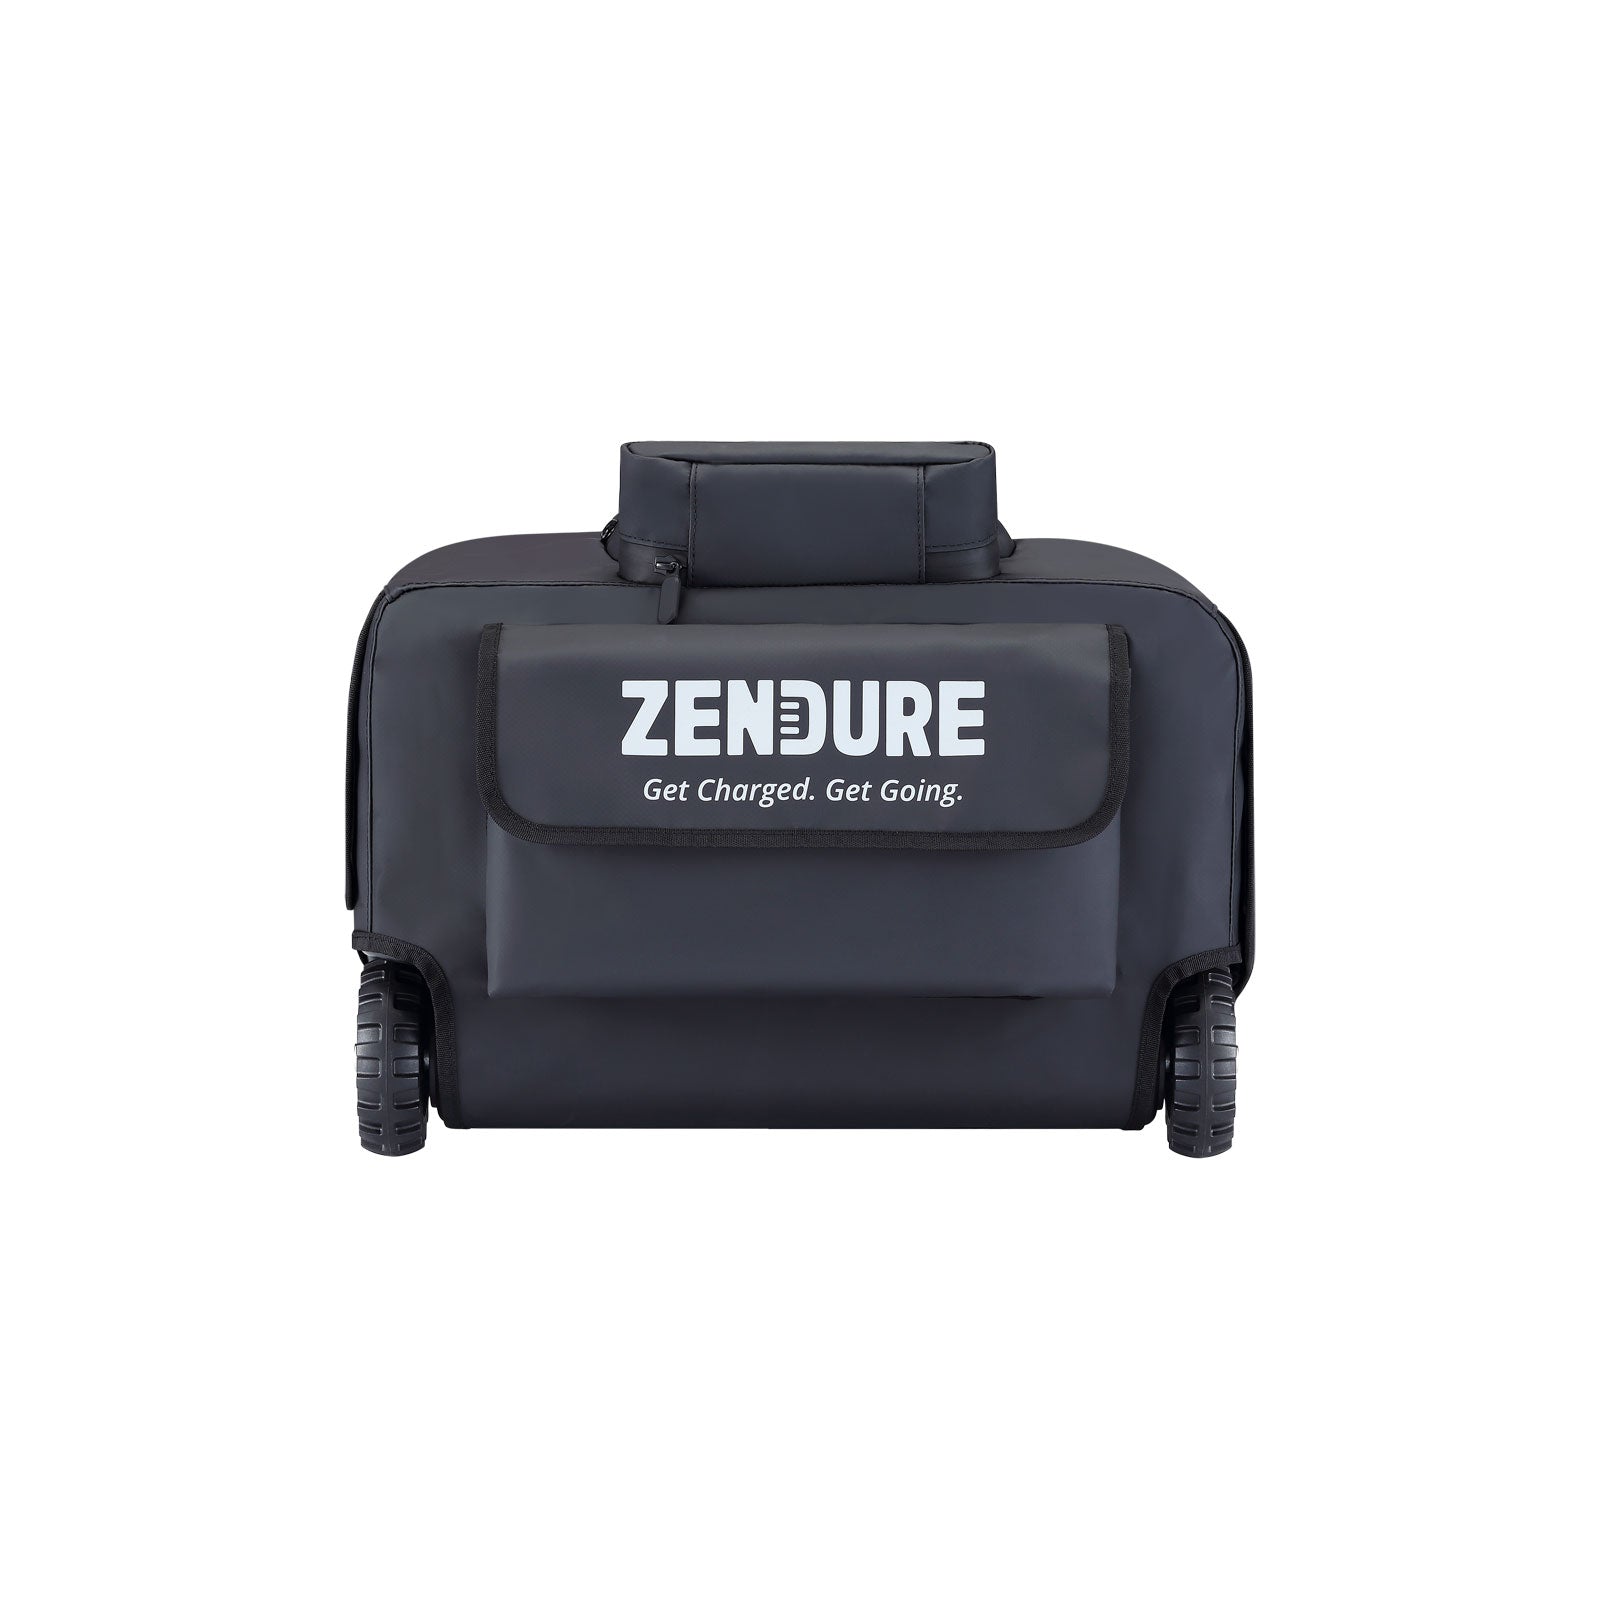 Zendure SuperBase Pro Dustproof Bag